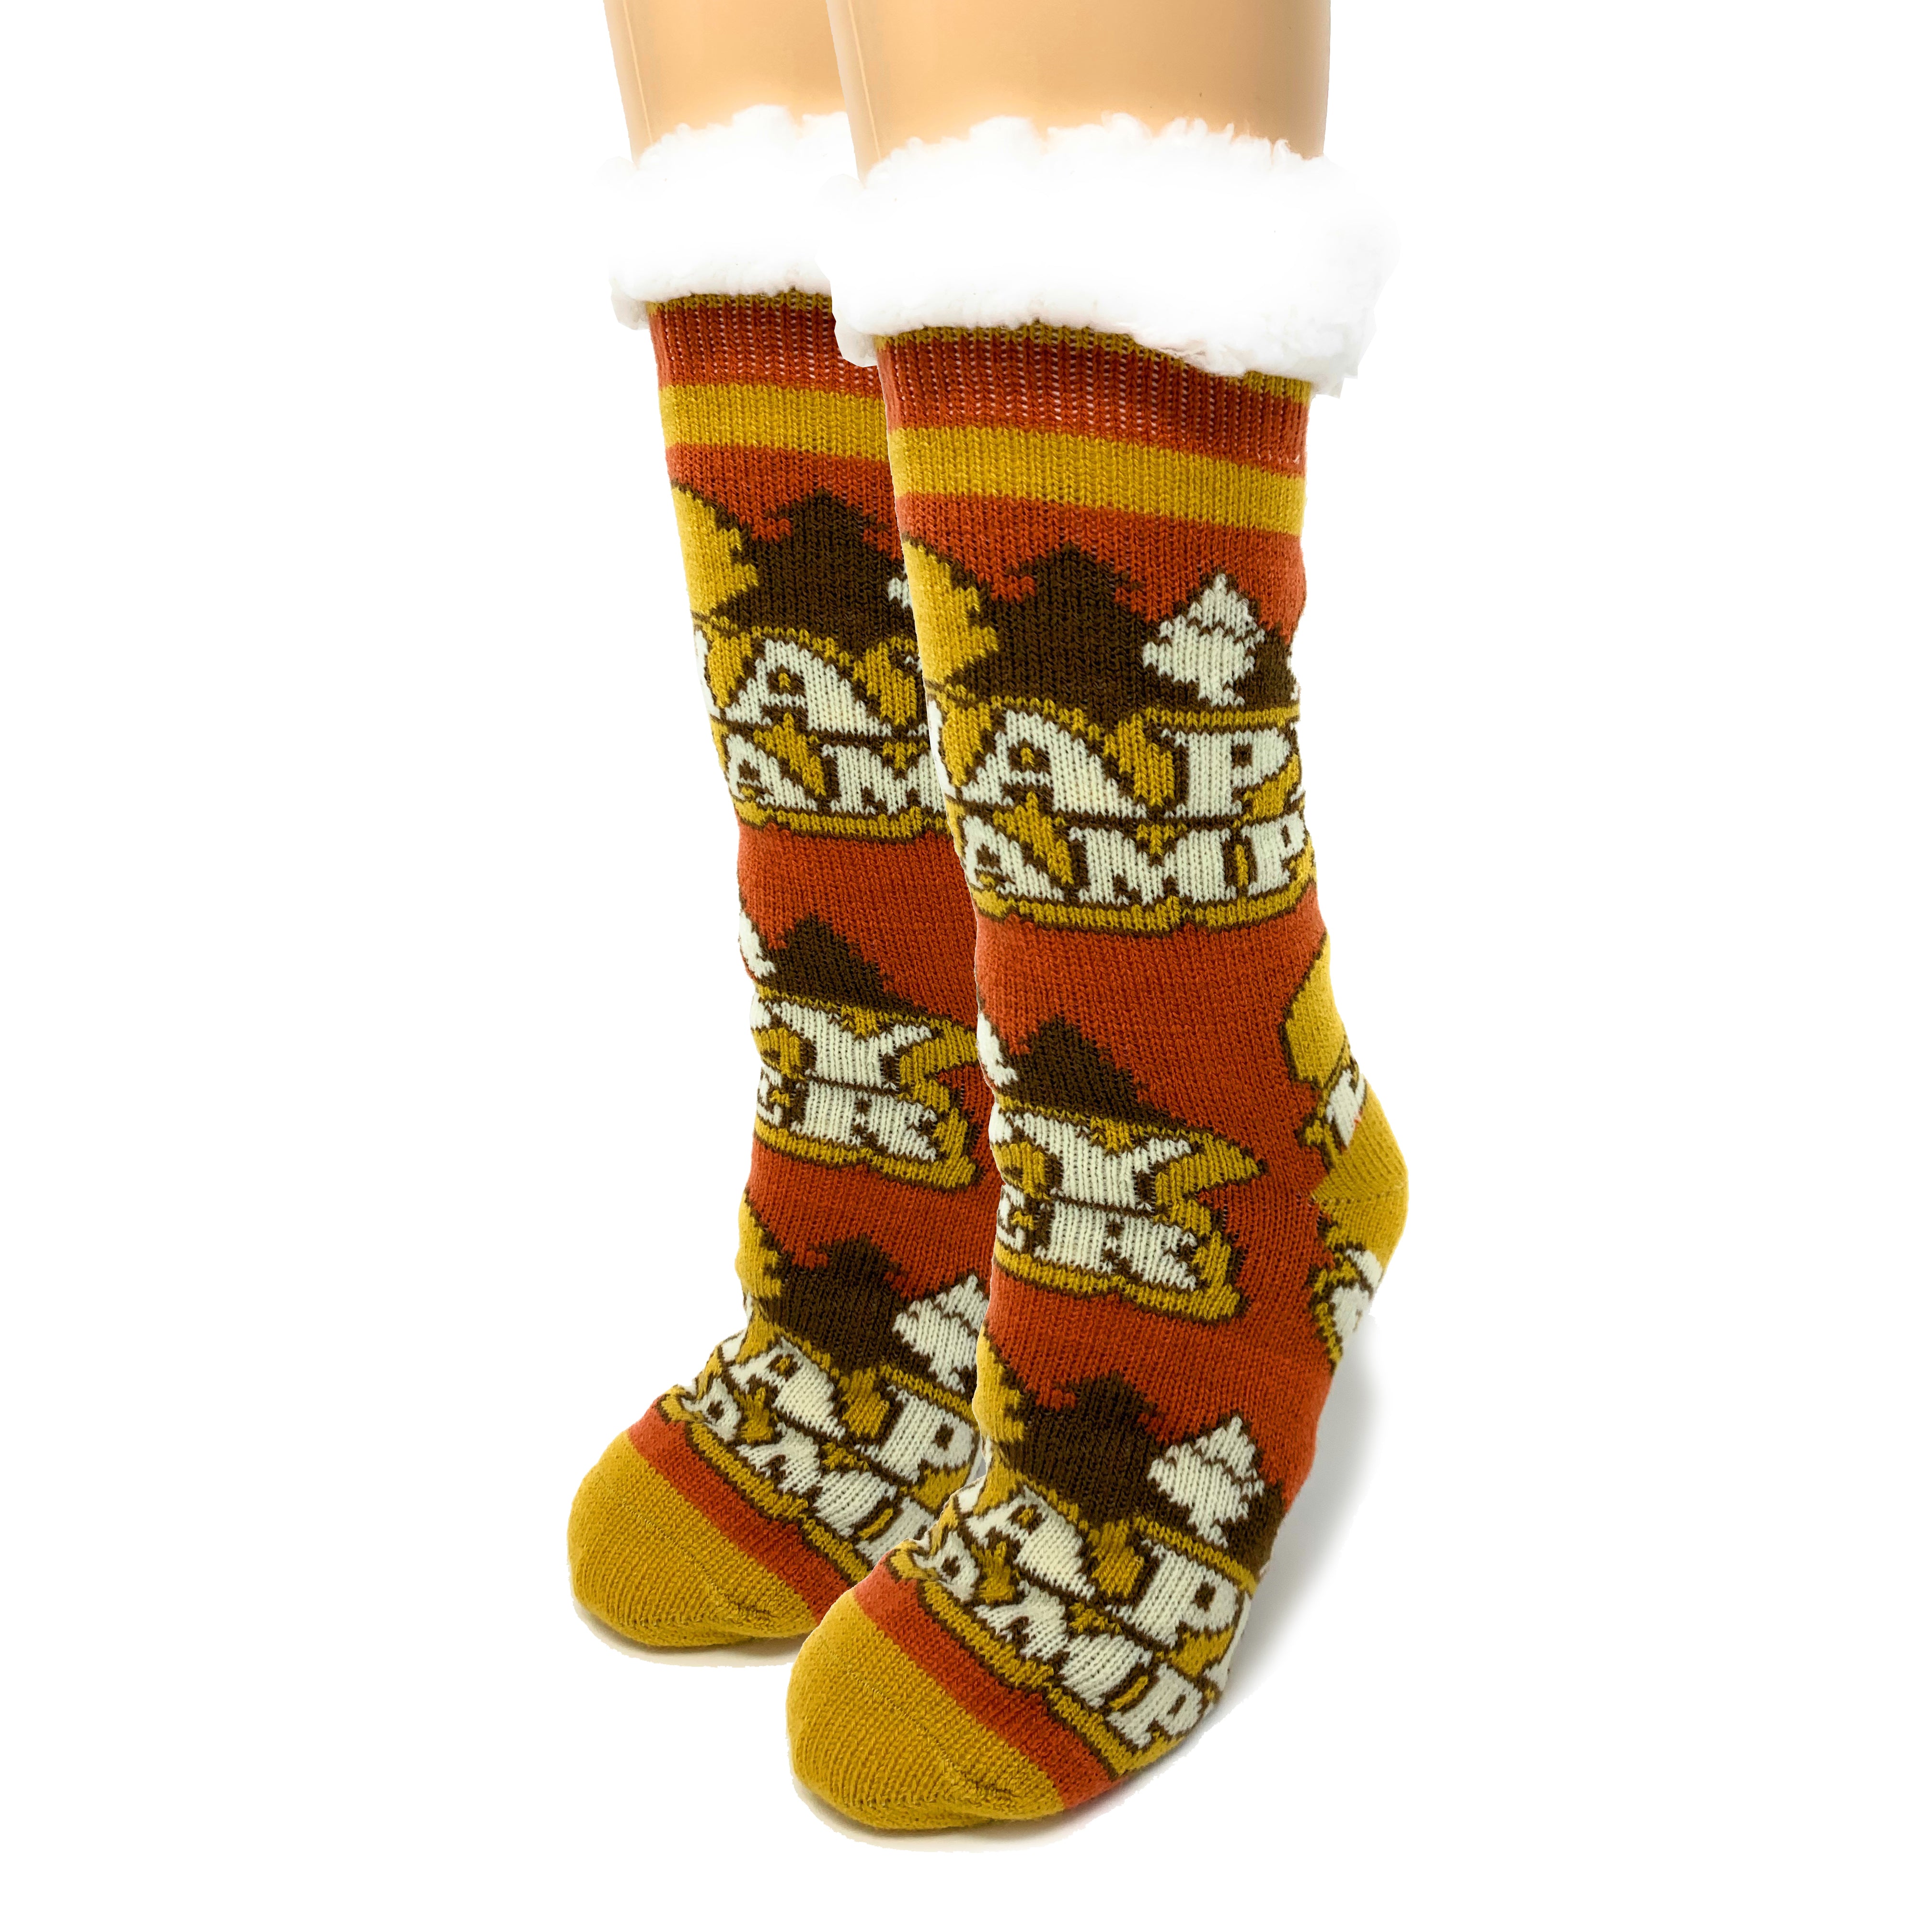 happy-camper-womens-slippers-2-oooh-yeah-socks